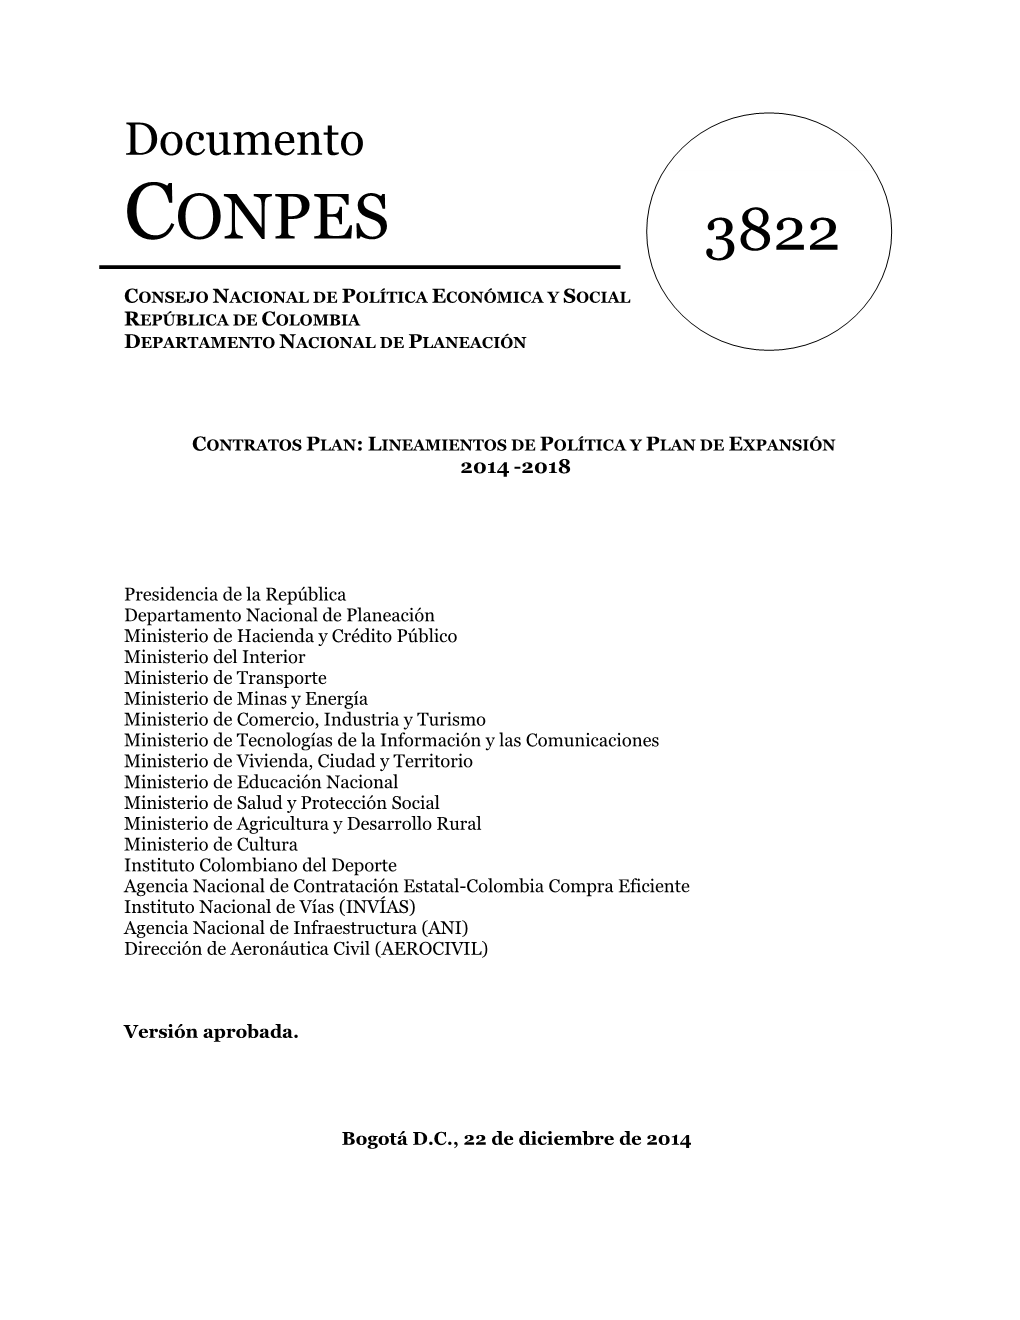 Documento CONPES 3822